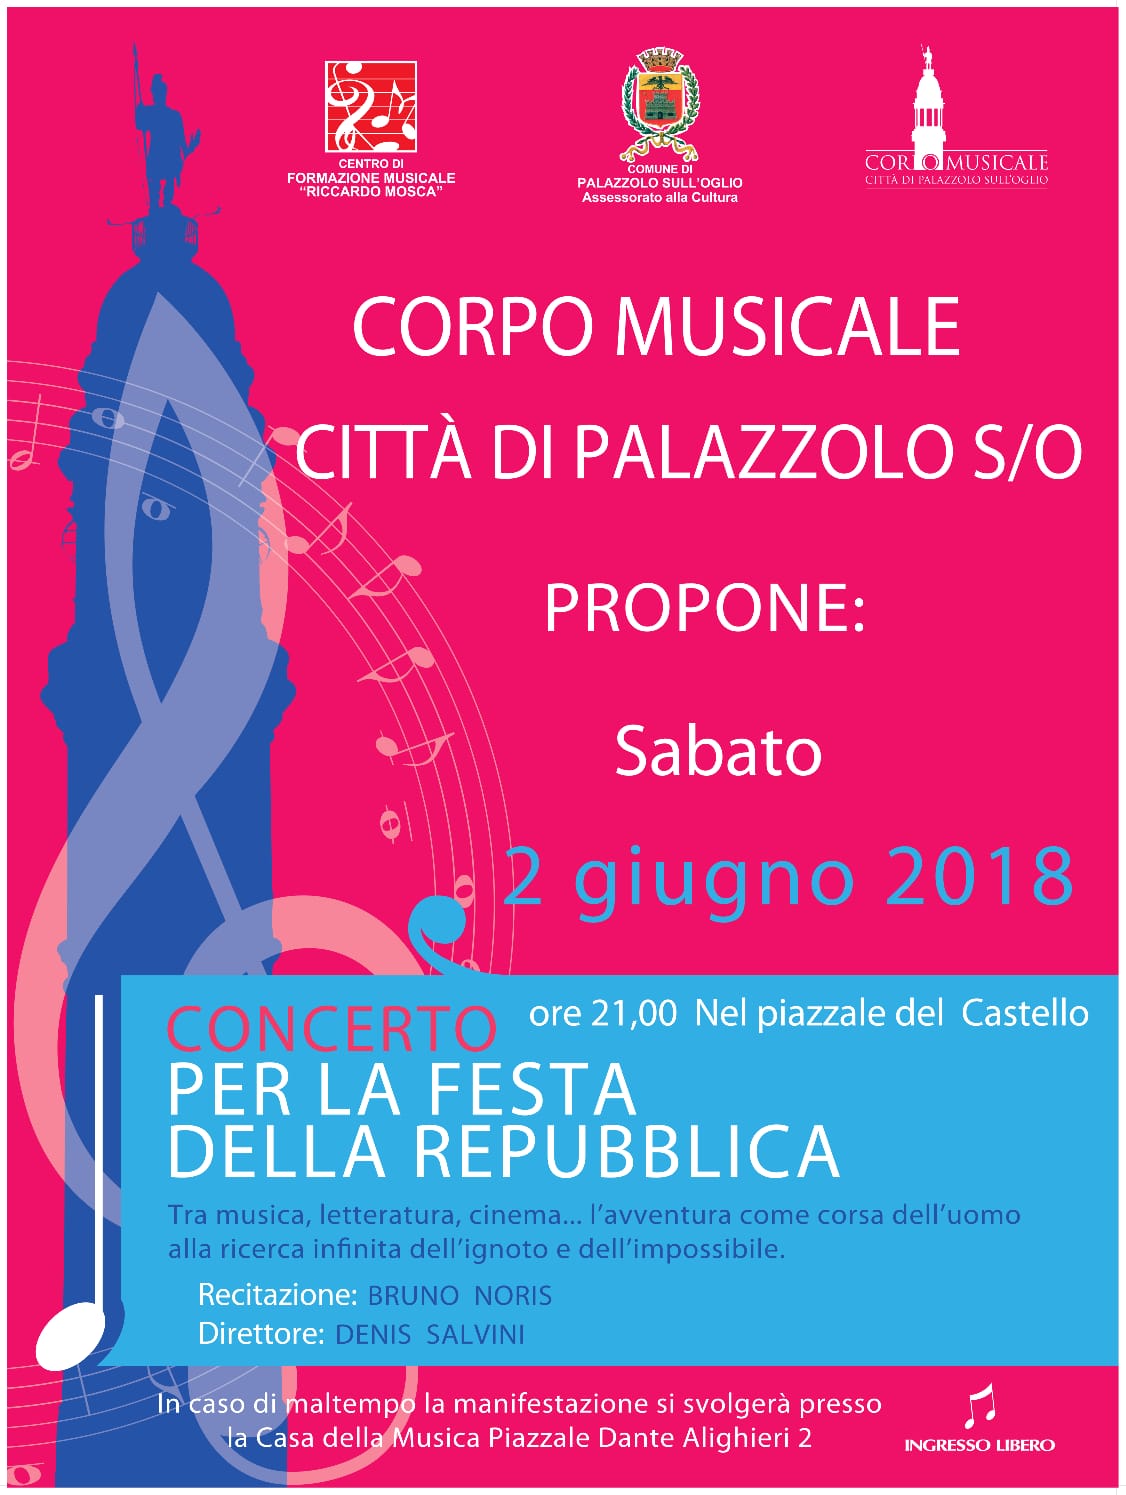 02/06 – Concerto per la Festa della Repubblica